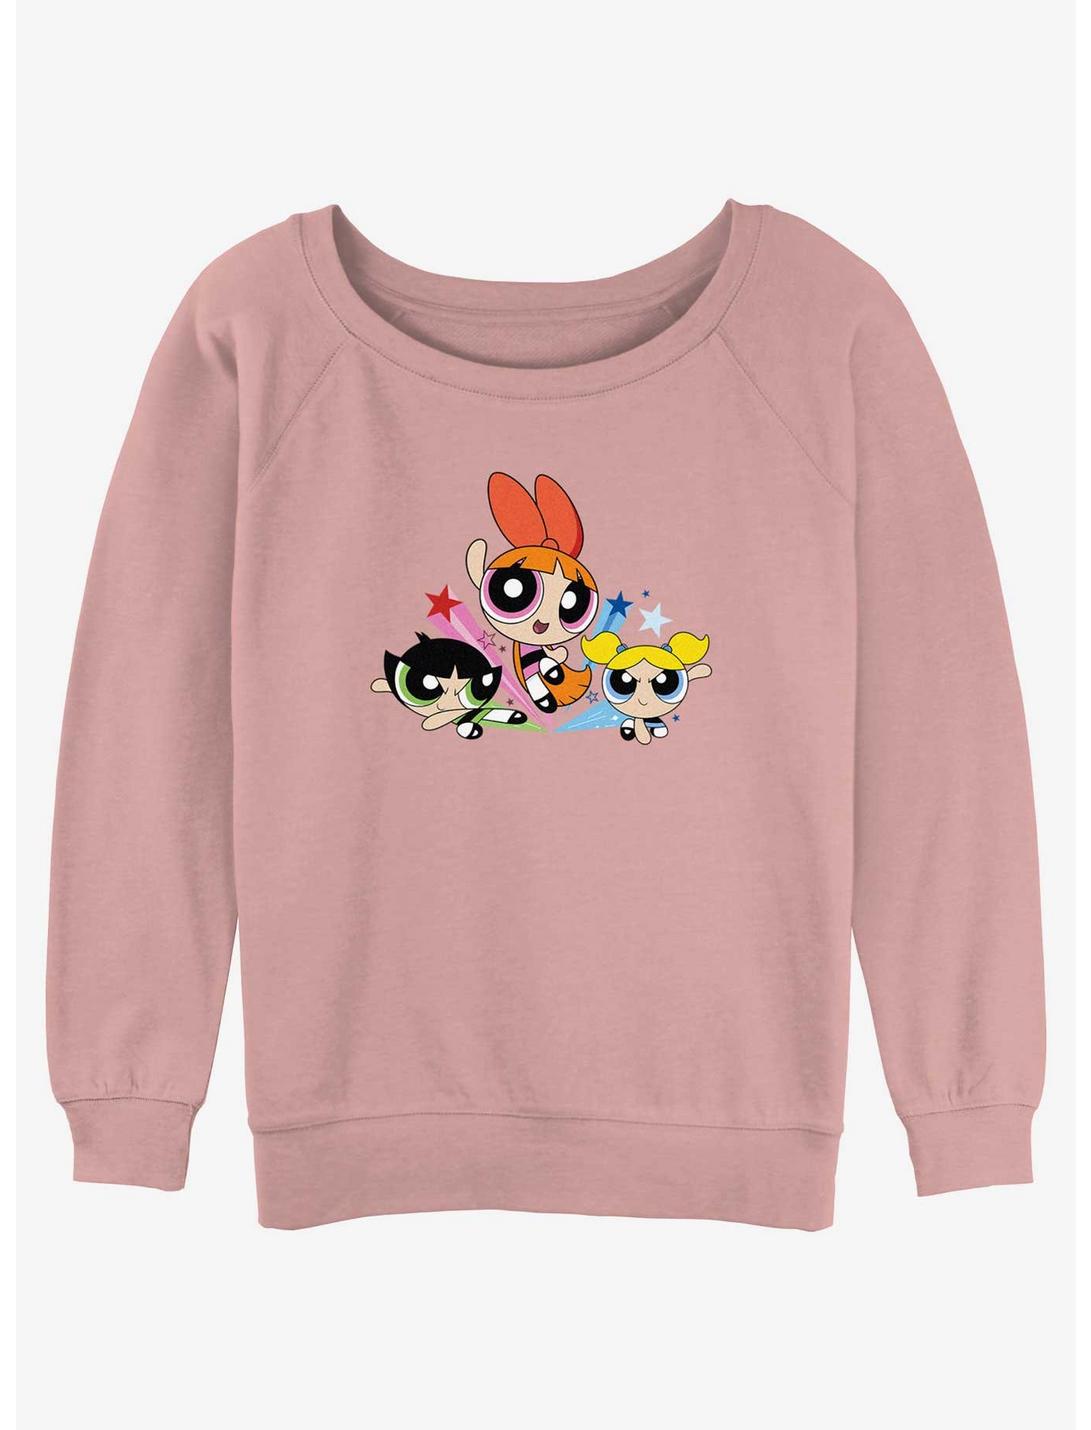 Cartoon Network The Powerpuff Girls Blossom, Bubbles, and Buttercup Girls Slouchy Sweatshirt, DESERTPNK, hi-res